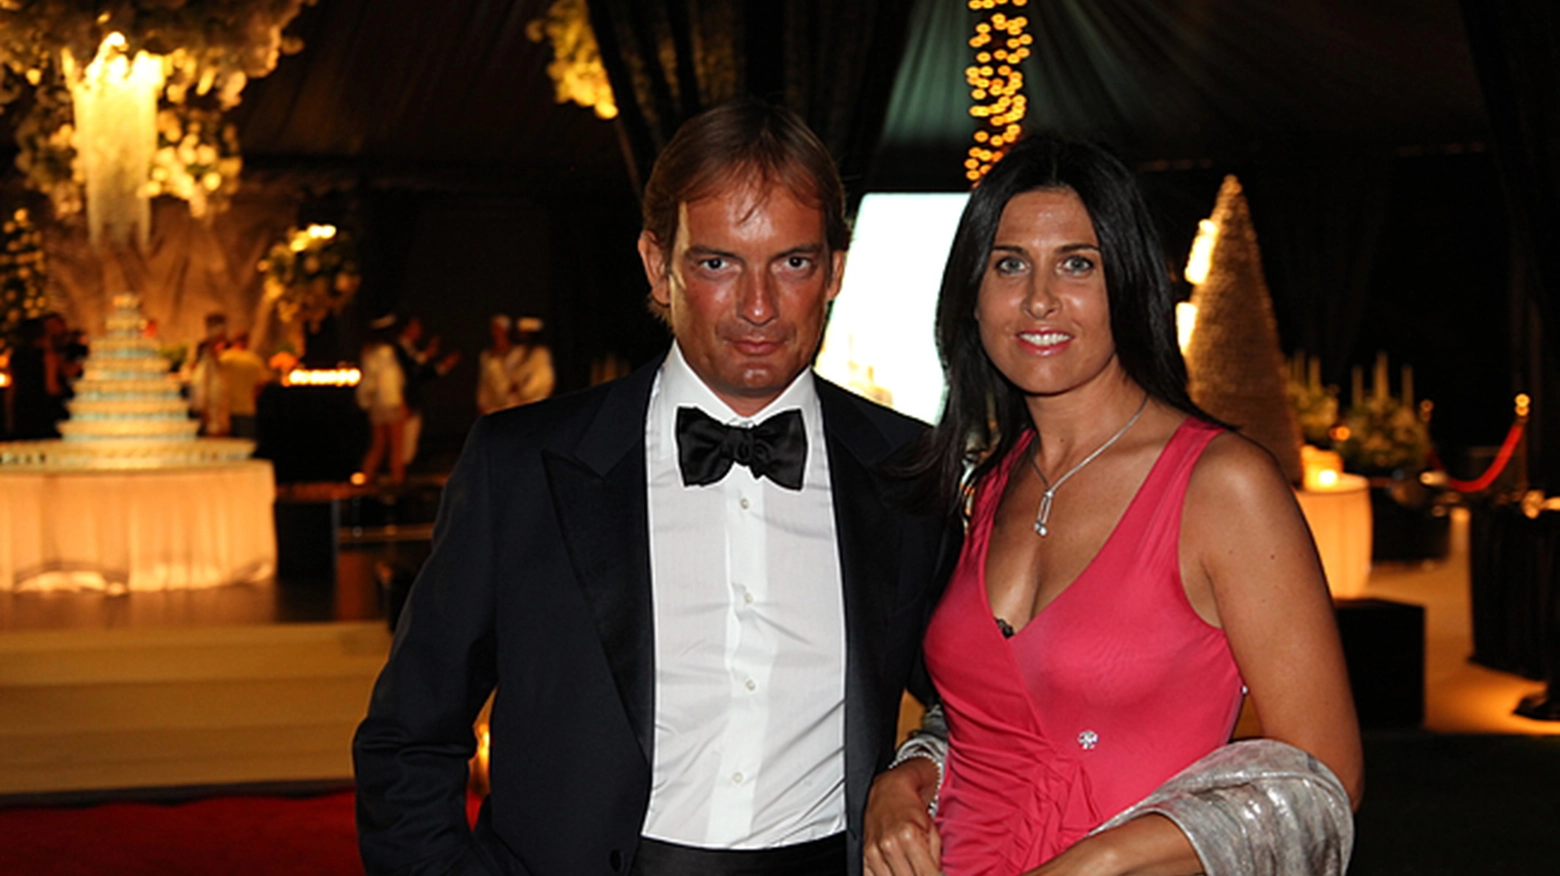 Matteo Cagnoni e Giulia Ballestri (foto Zani)